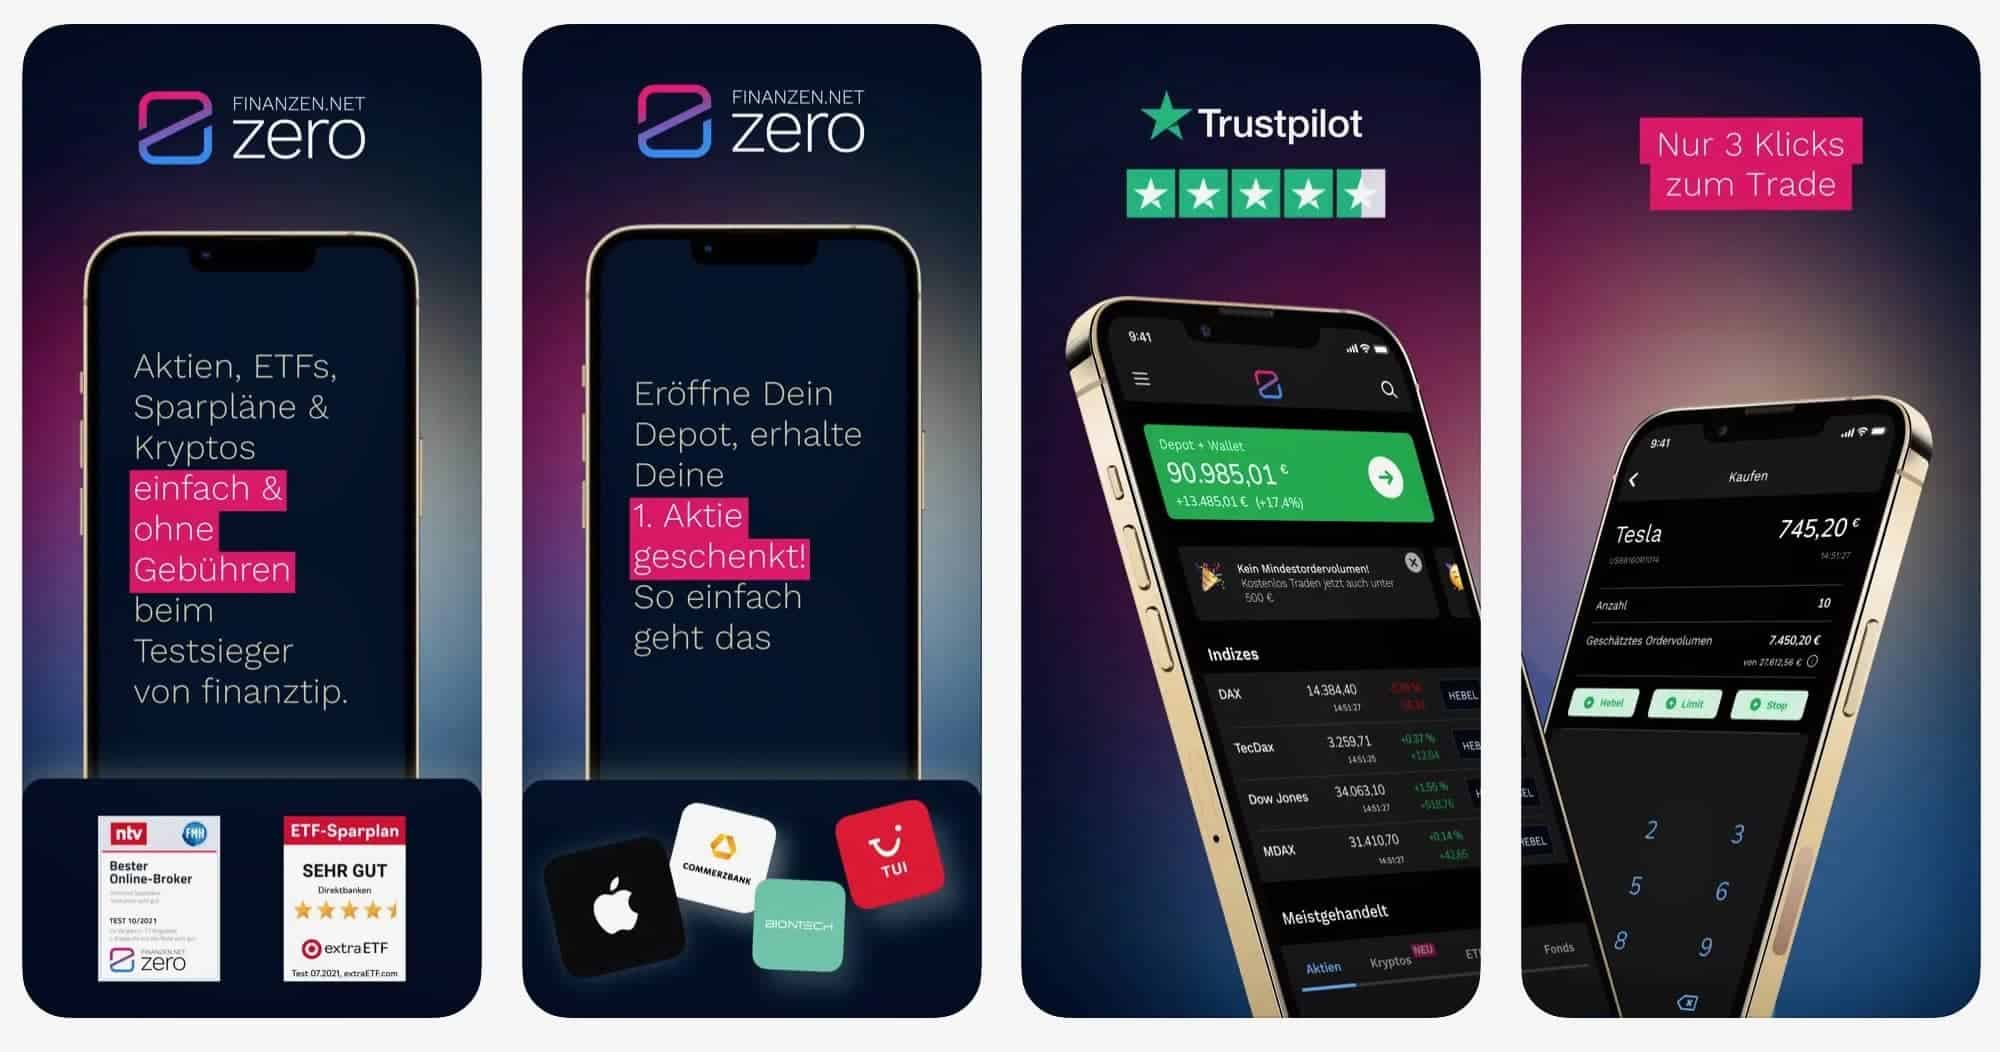 Finanzen.net Zero App iPhone